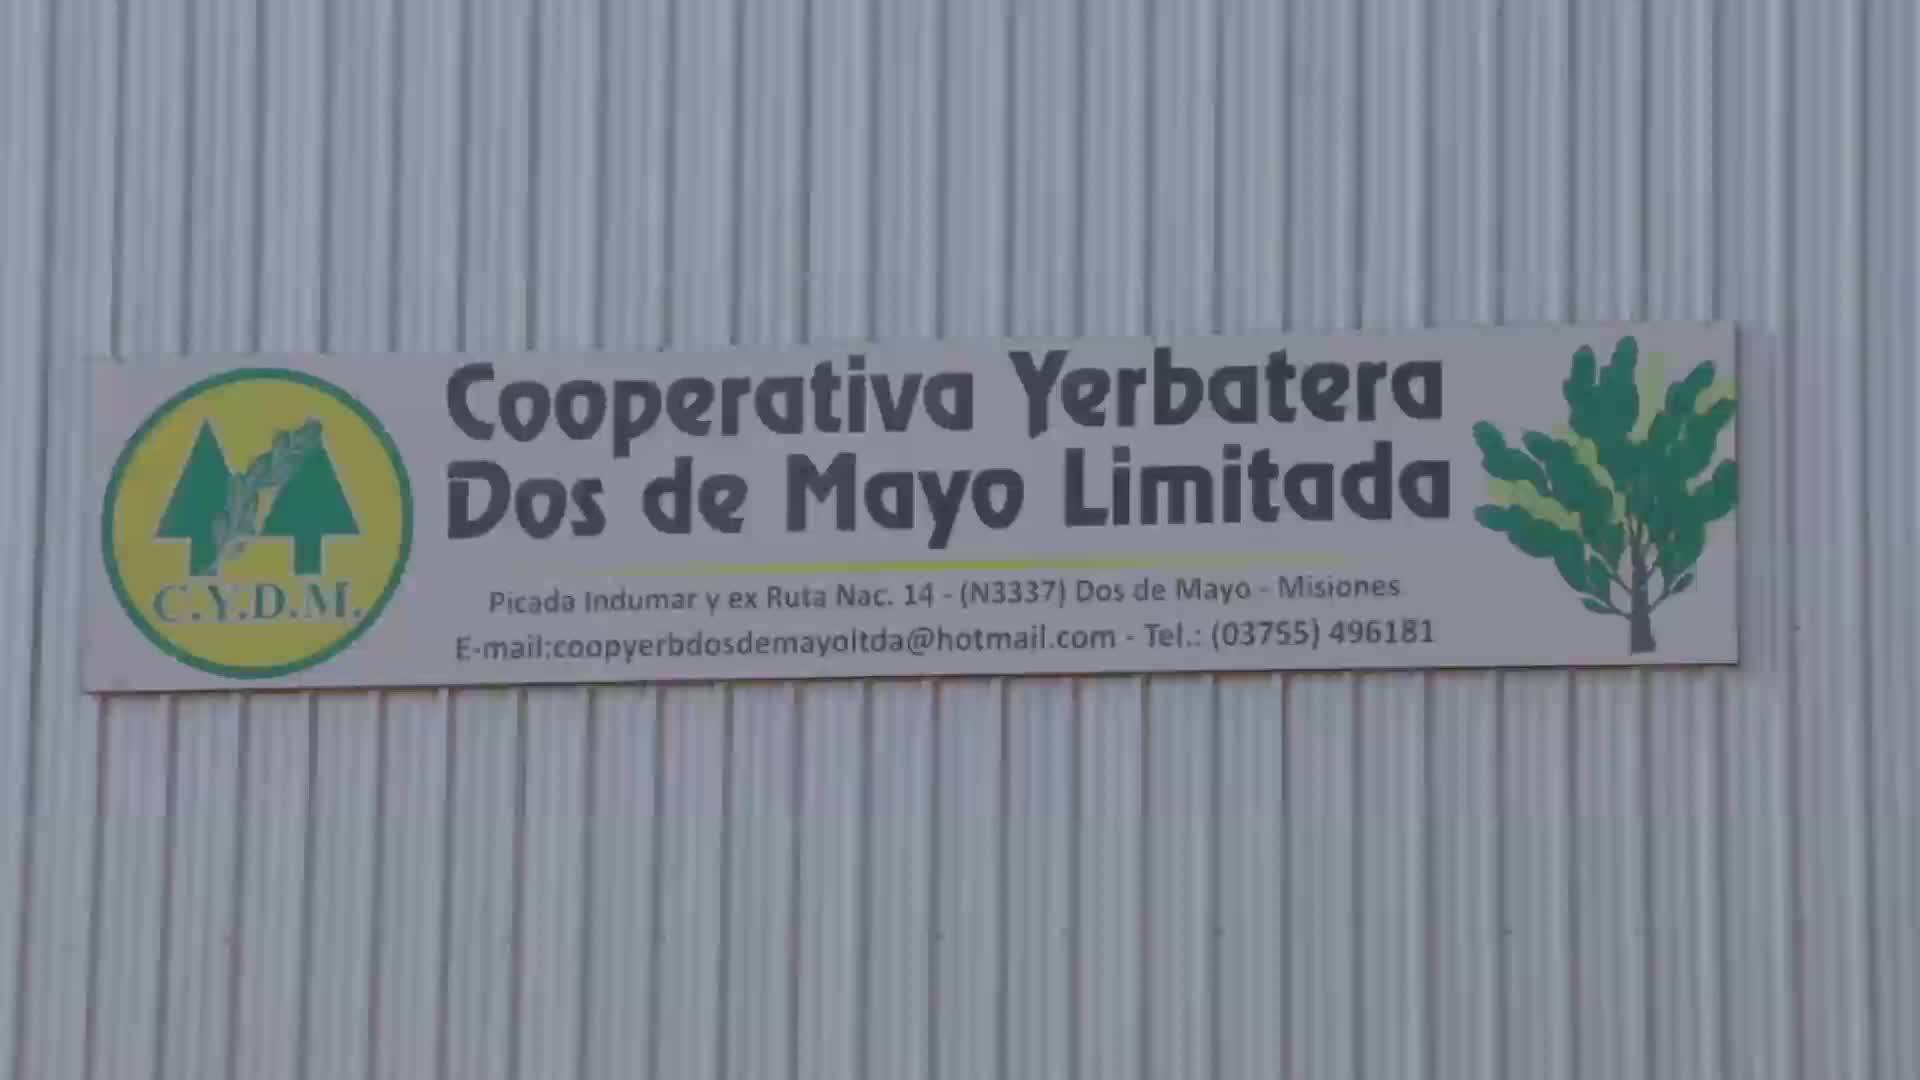 Inaugurada en 1994 Cooperativa Yerbatera Dos de Mayo Limitada, casi 25 años de crecimiento